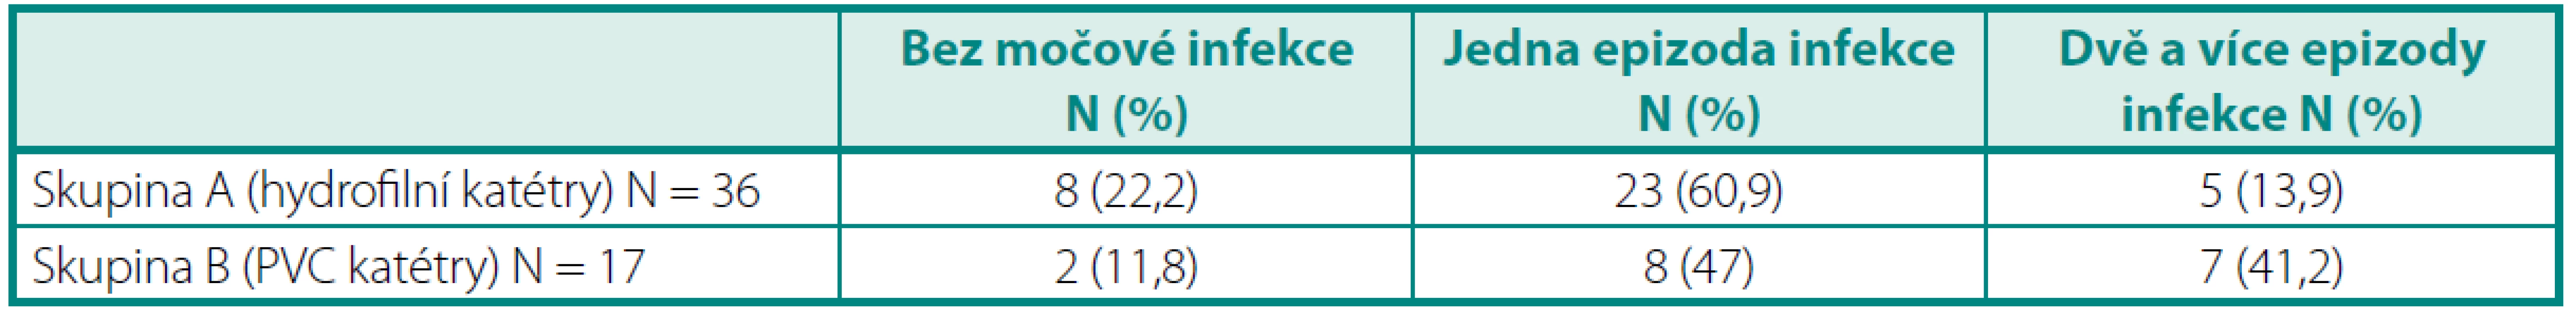 Výskyt epizod symptomatické močové infekce
Table 4. The incidence of episodes of the symptomatic UTI